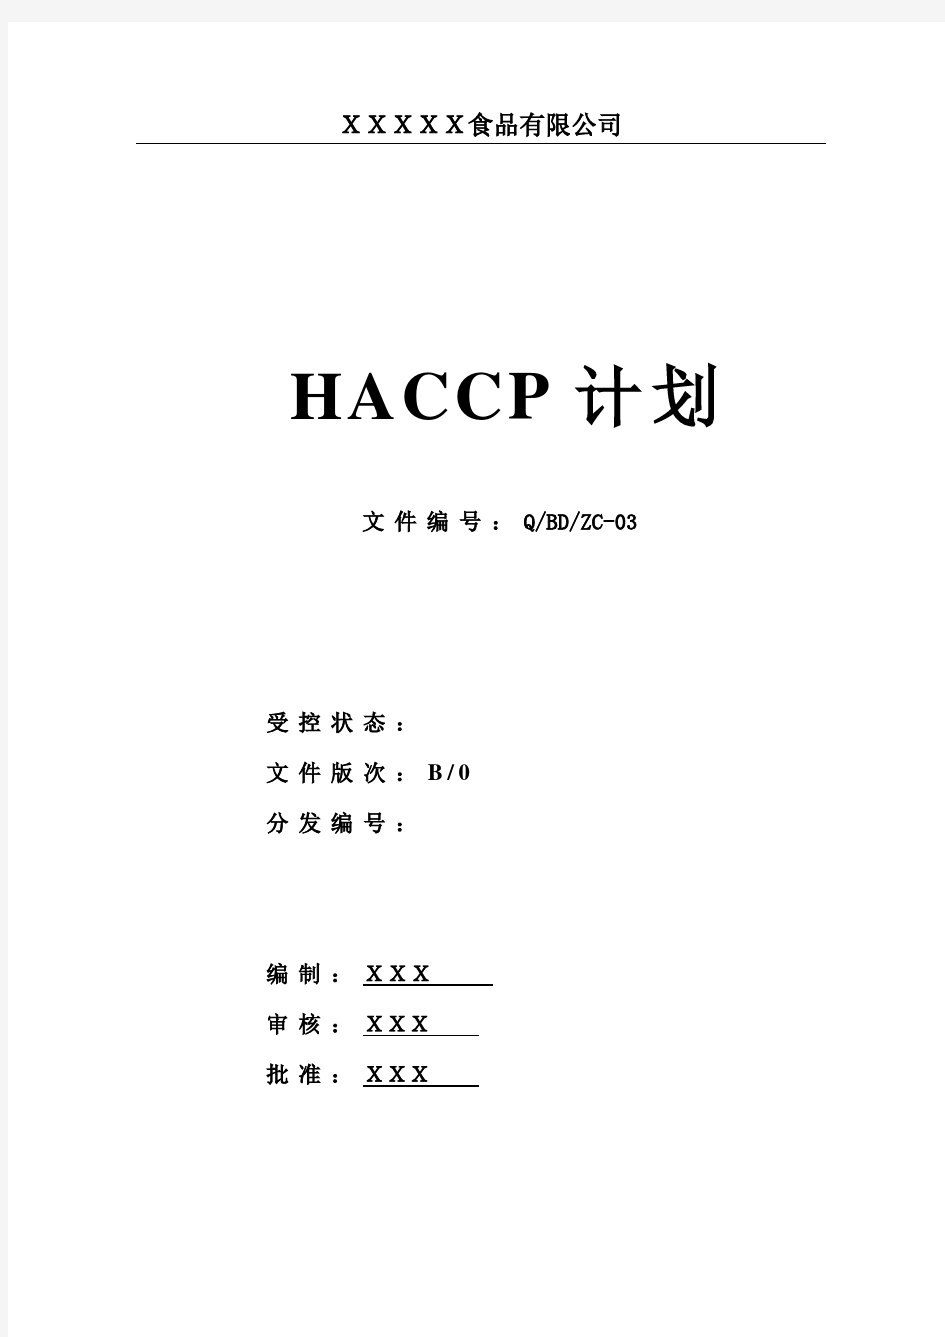 HACCP计划书模板